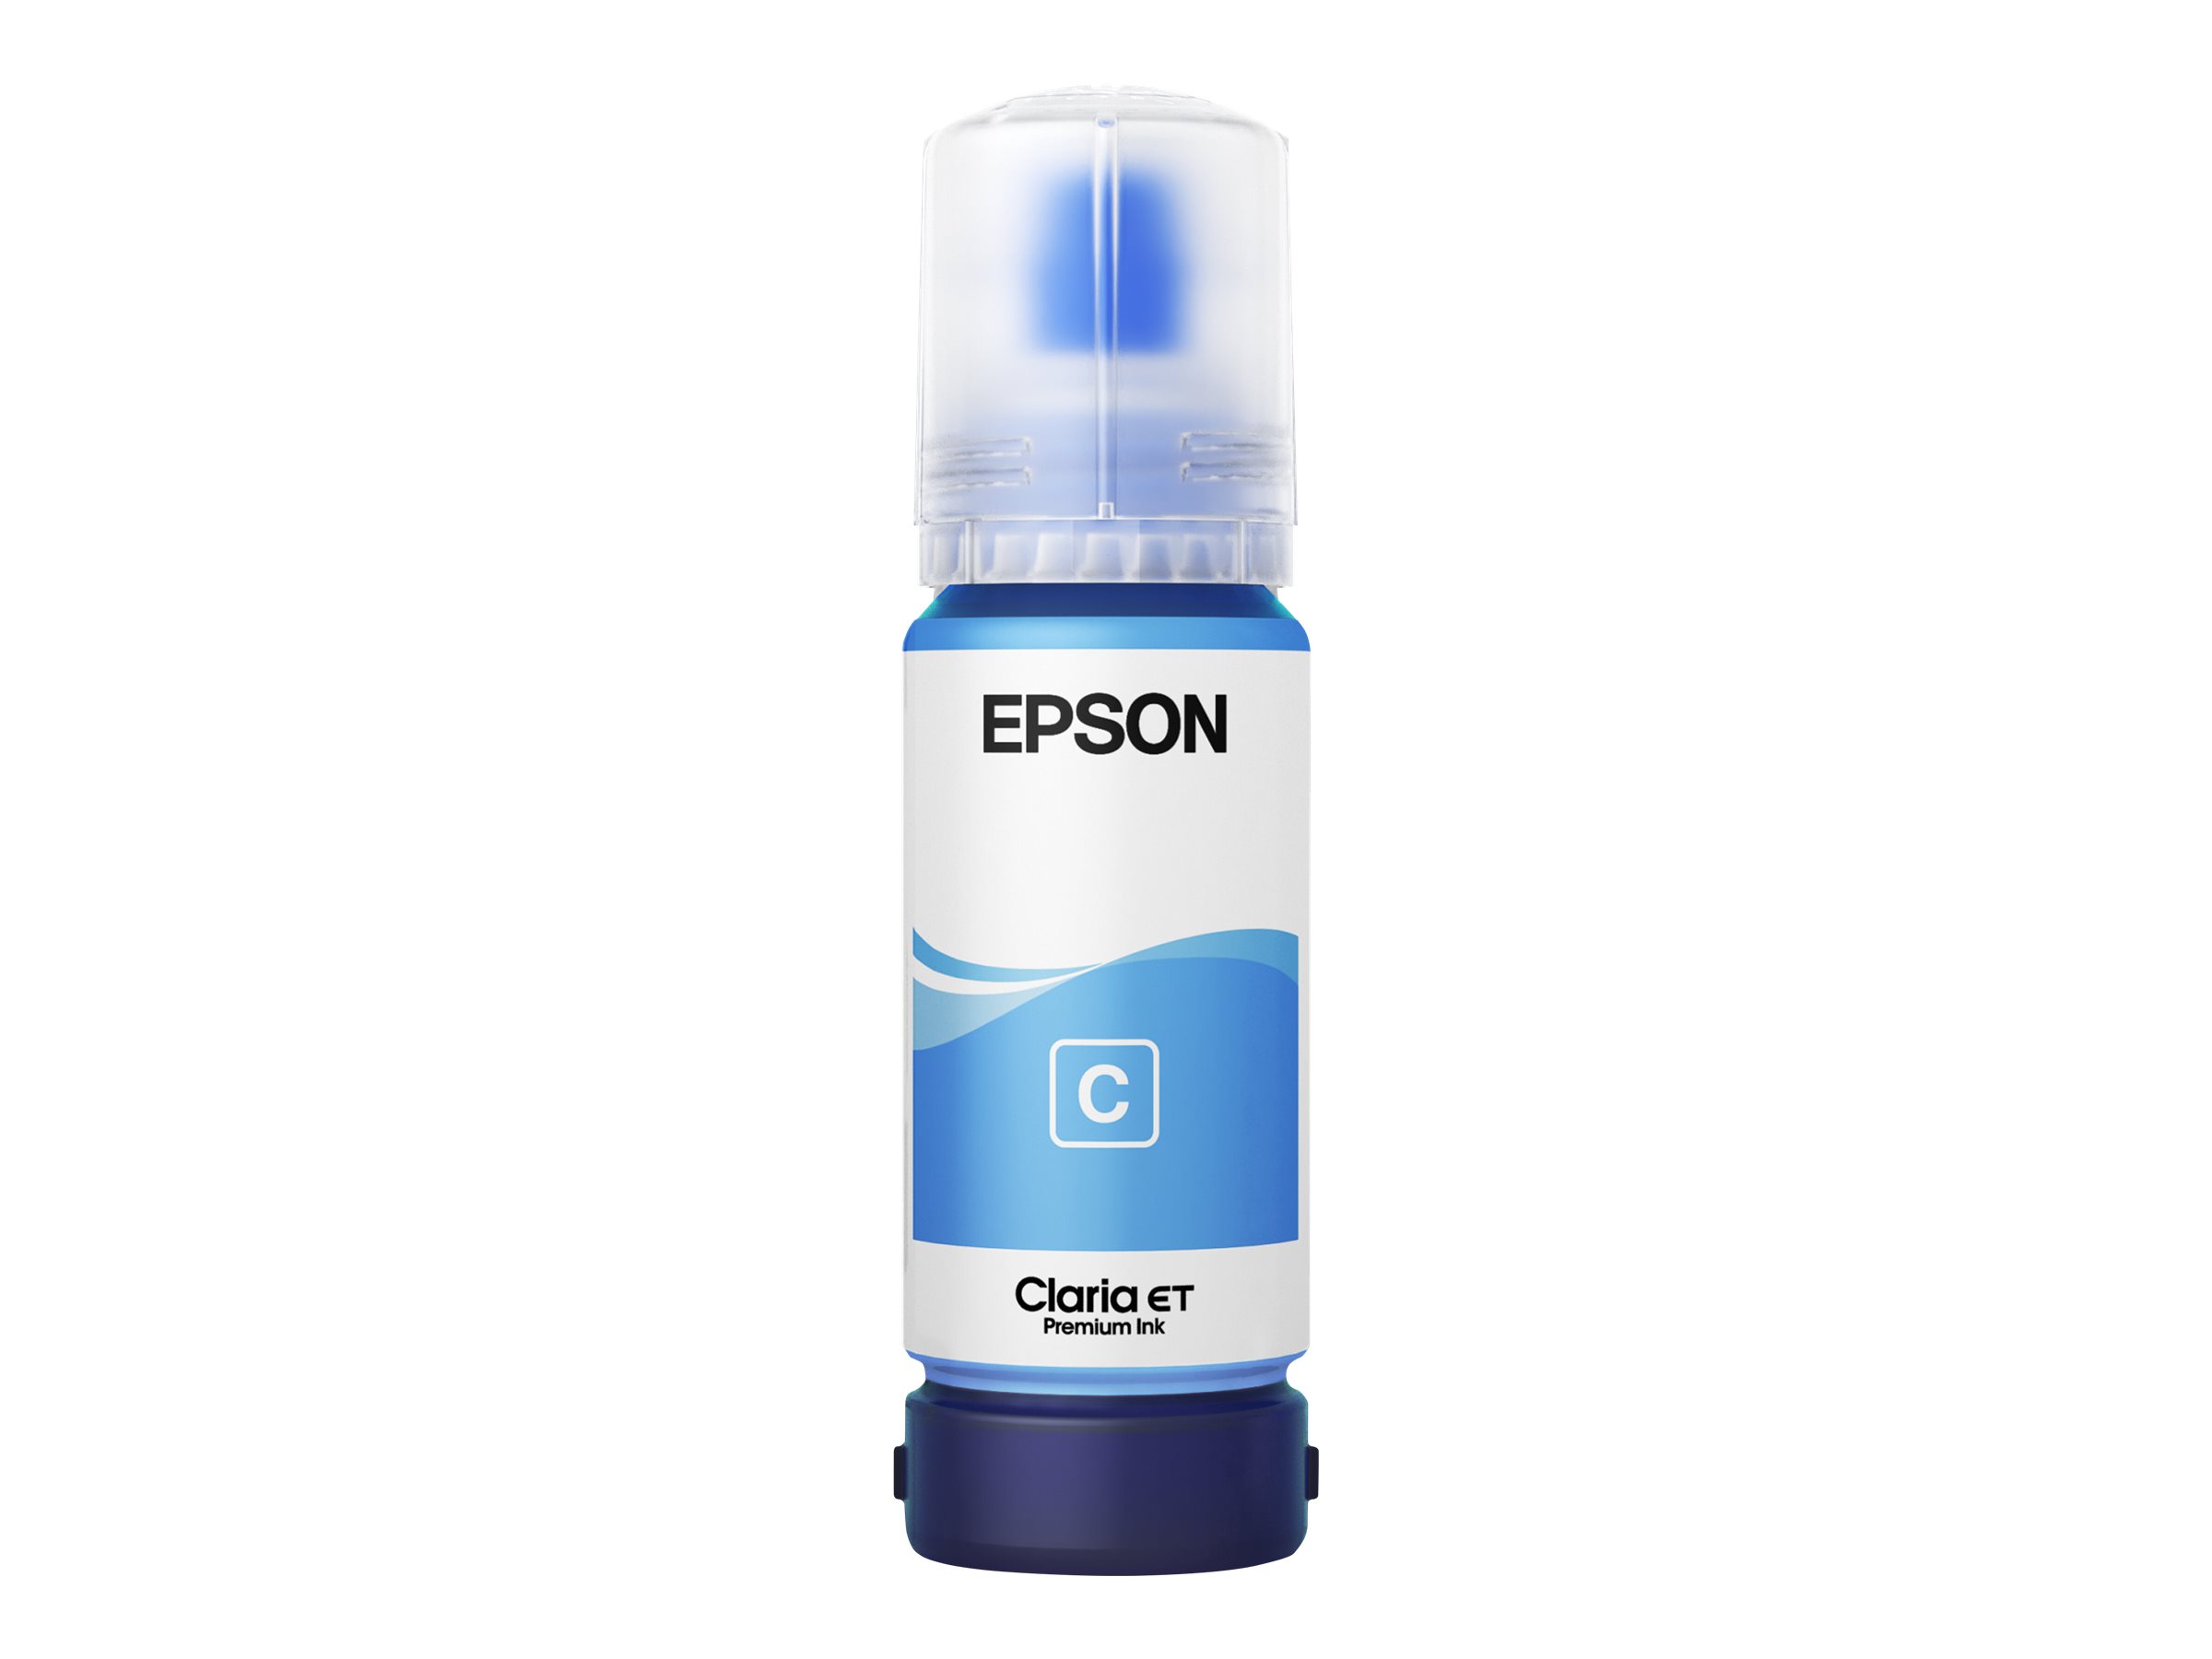 Epson 114 - 70 ml - Cyan - original - Nachfülltinte